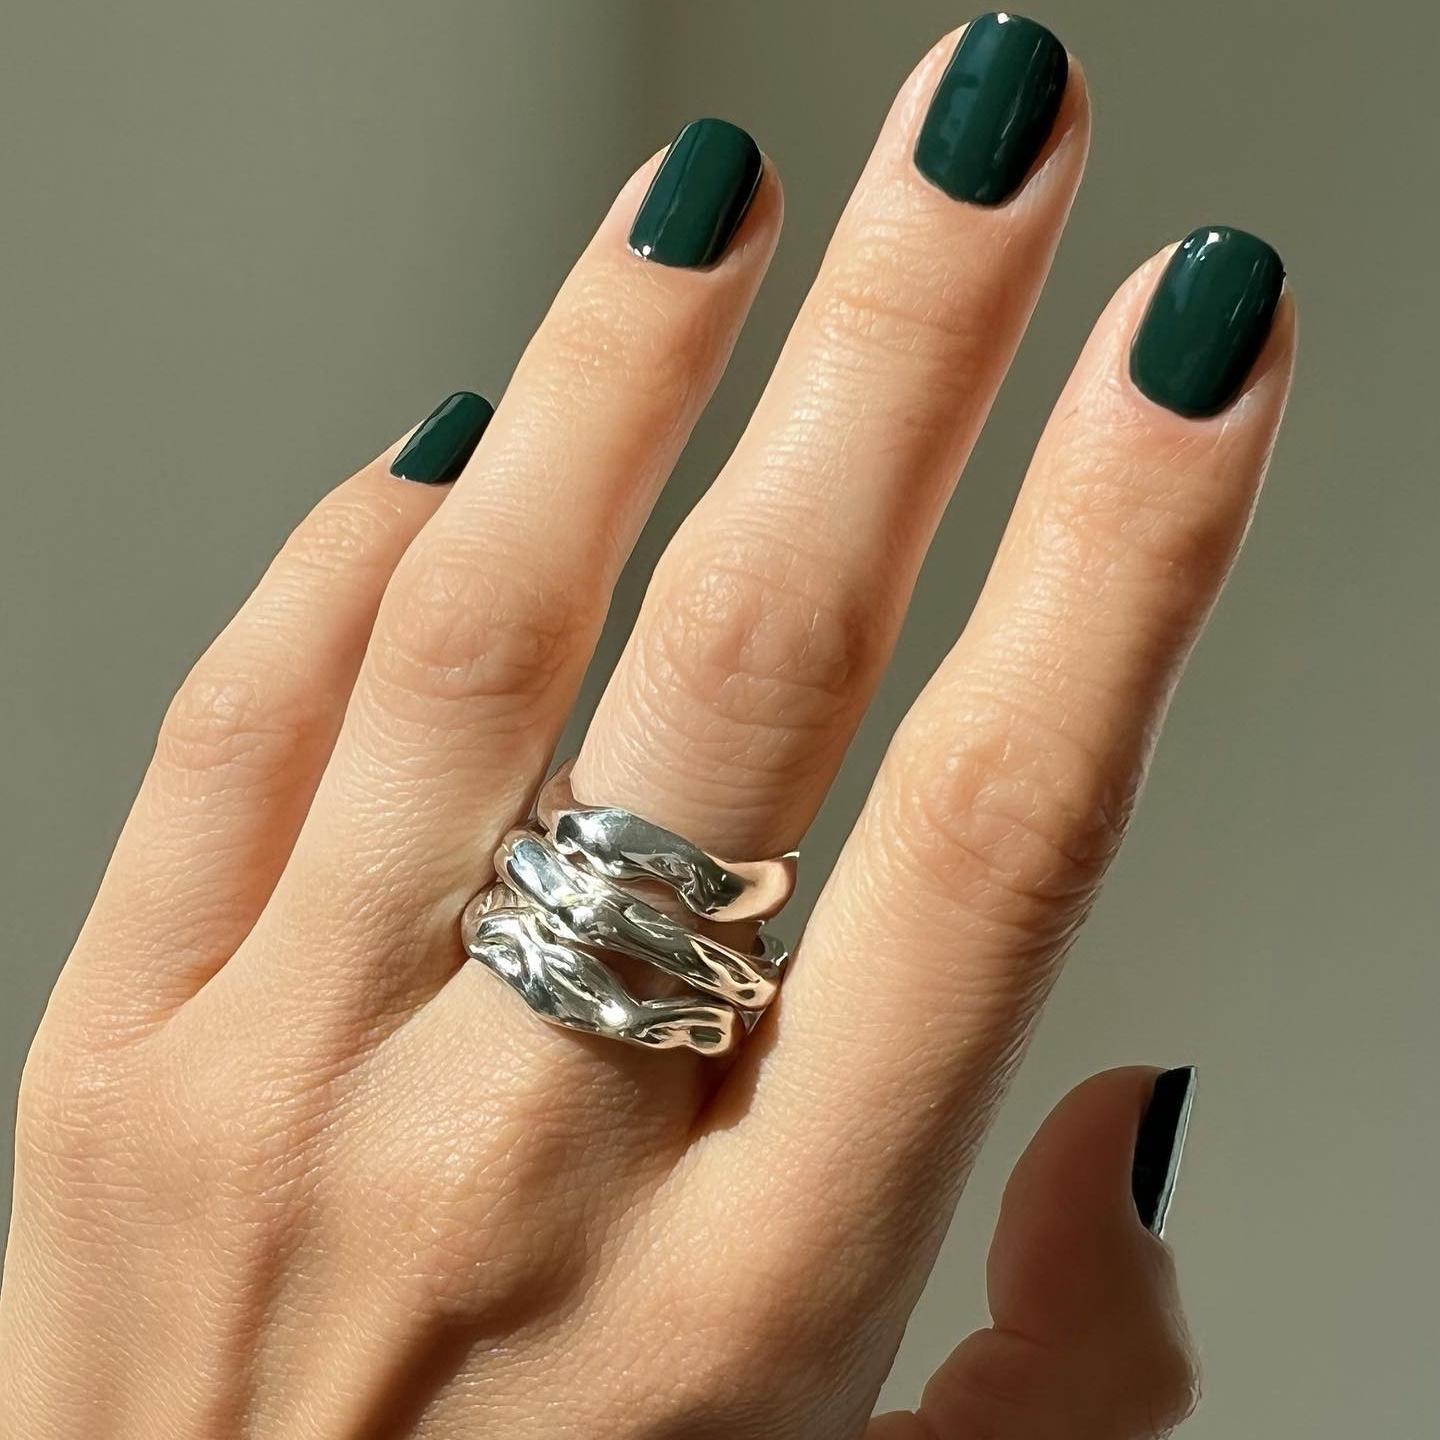 Manicura en color verde oscuro, sencilla y elegante y combinada con un maxi anillo en plata